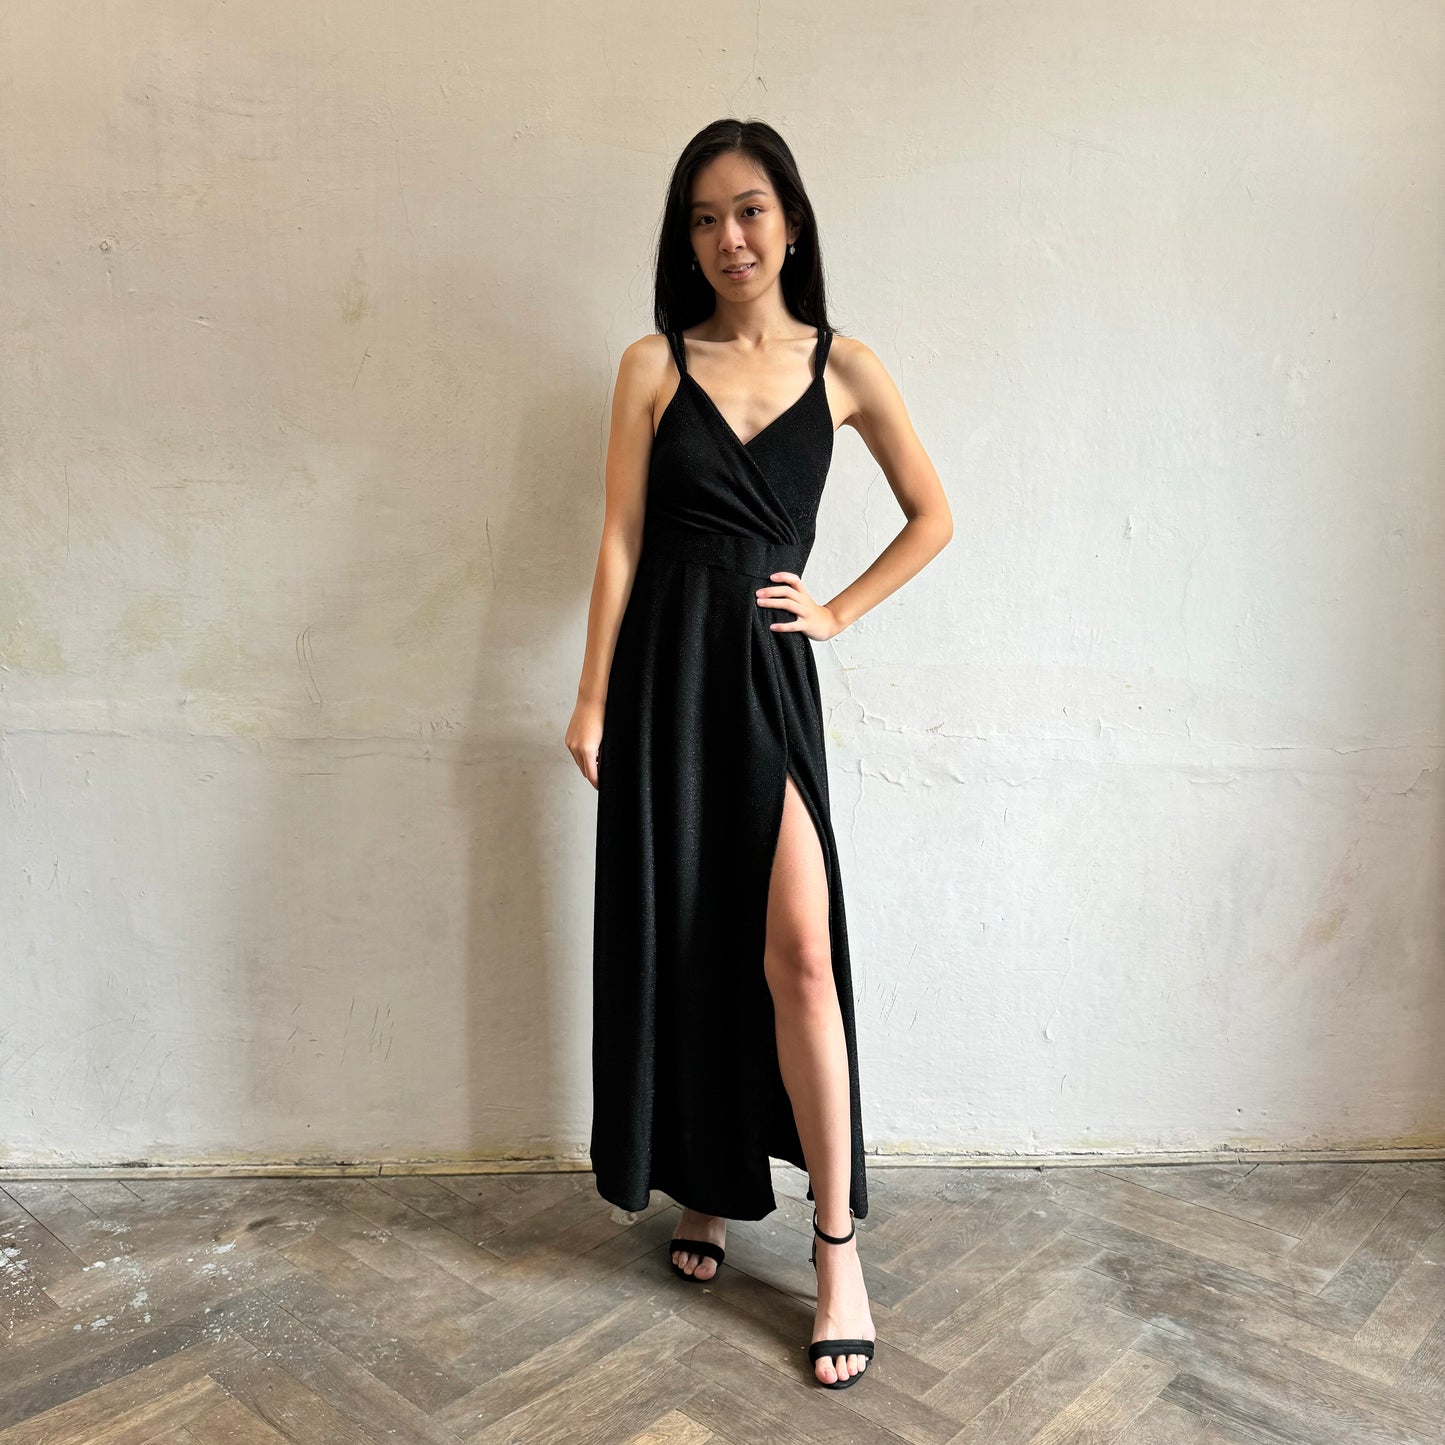 Modelka asijského původu pózující zepředu se třpytivými společenskými šaty v černé barvě